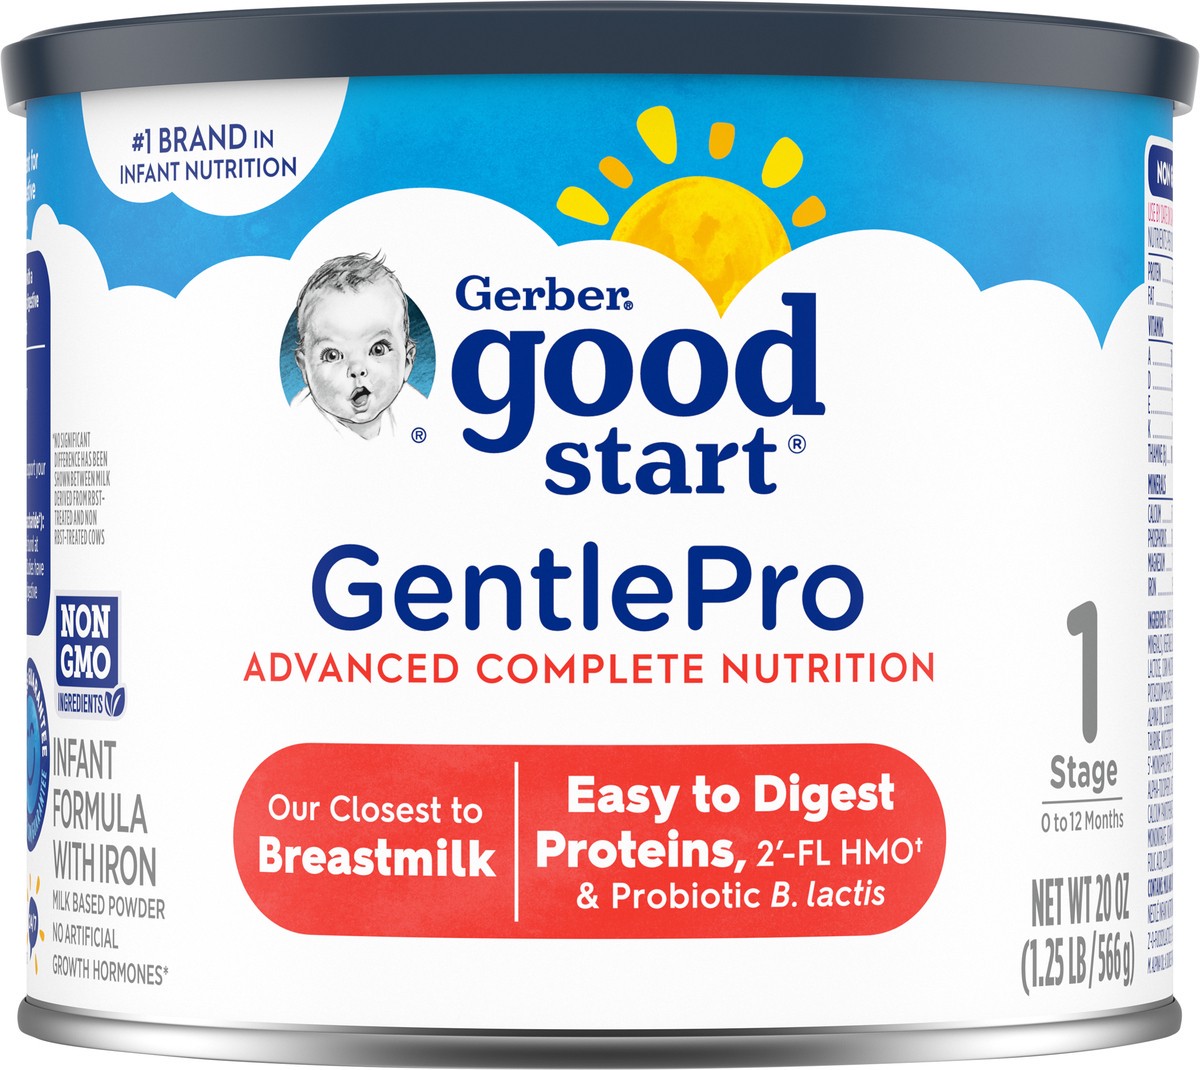 slide 6 of 14, Gerber Good Start GentlePro Stage 1 (0 to 12 Months) Milk Based Powder Infant Formula with Iron 20 oz, 20 oz